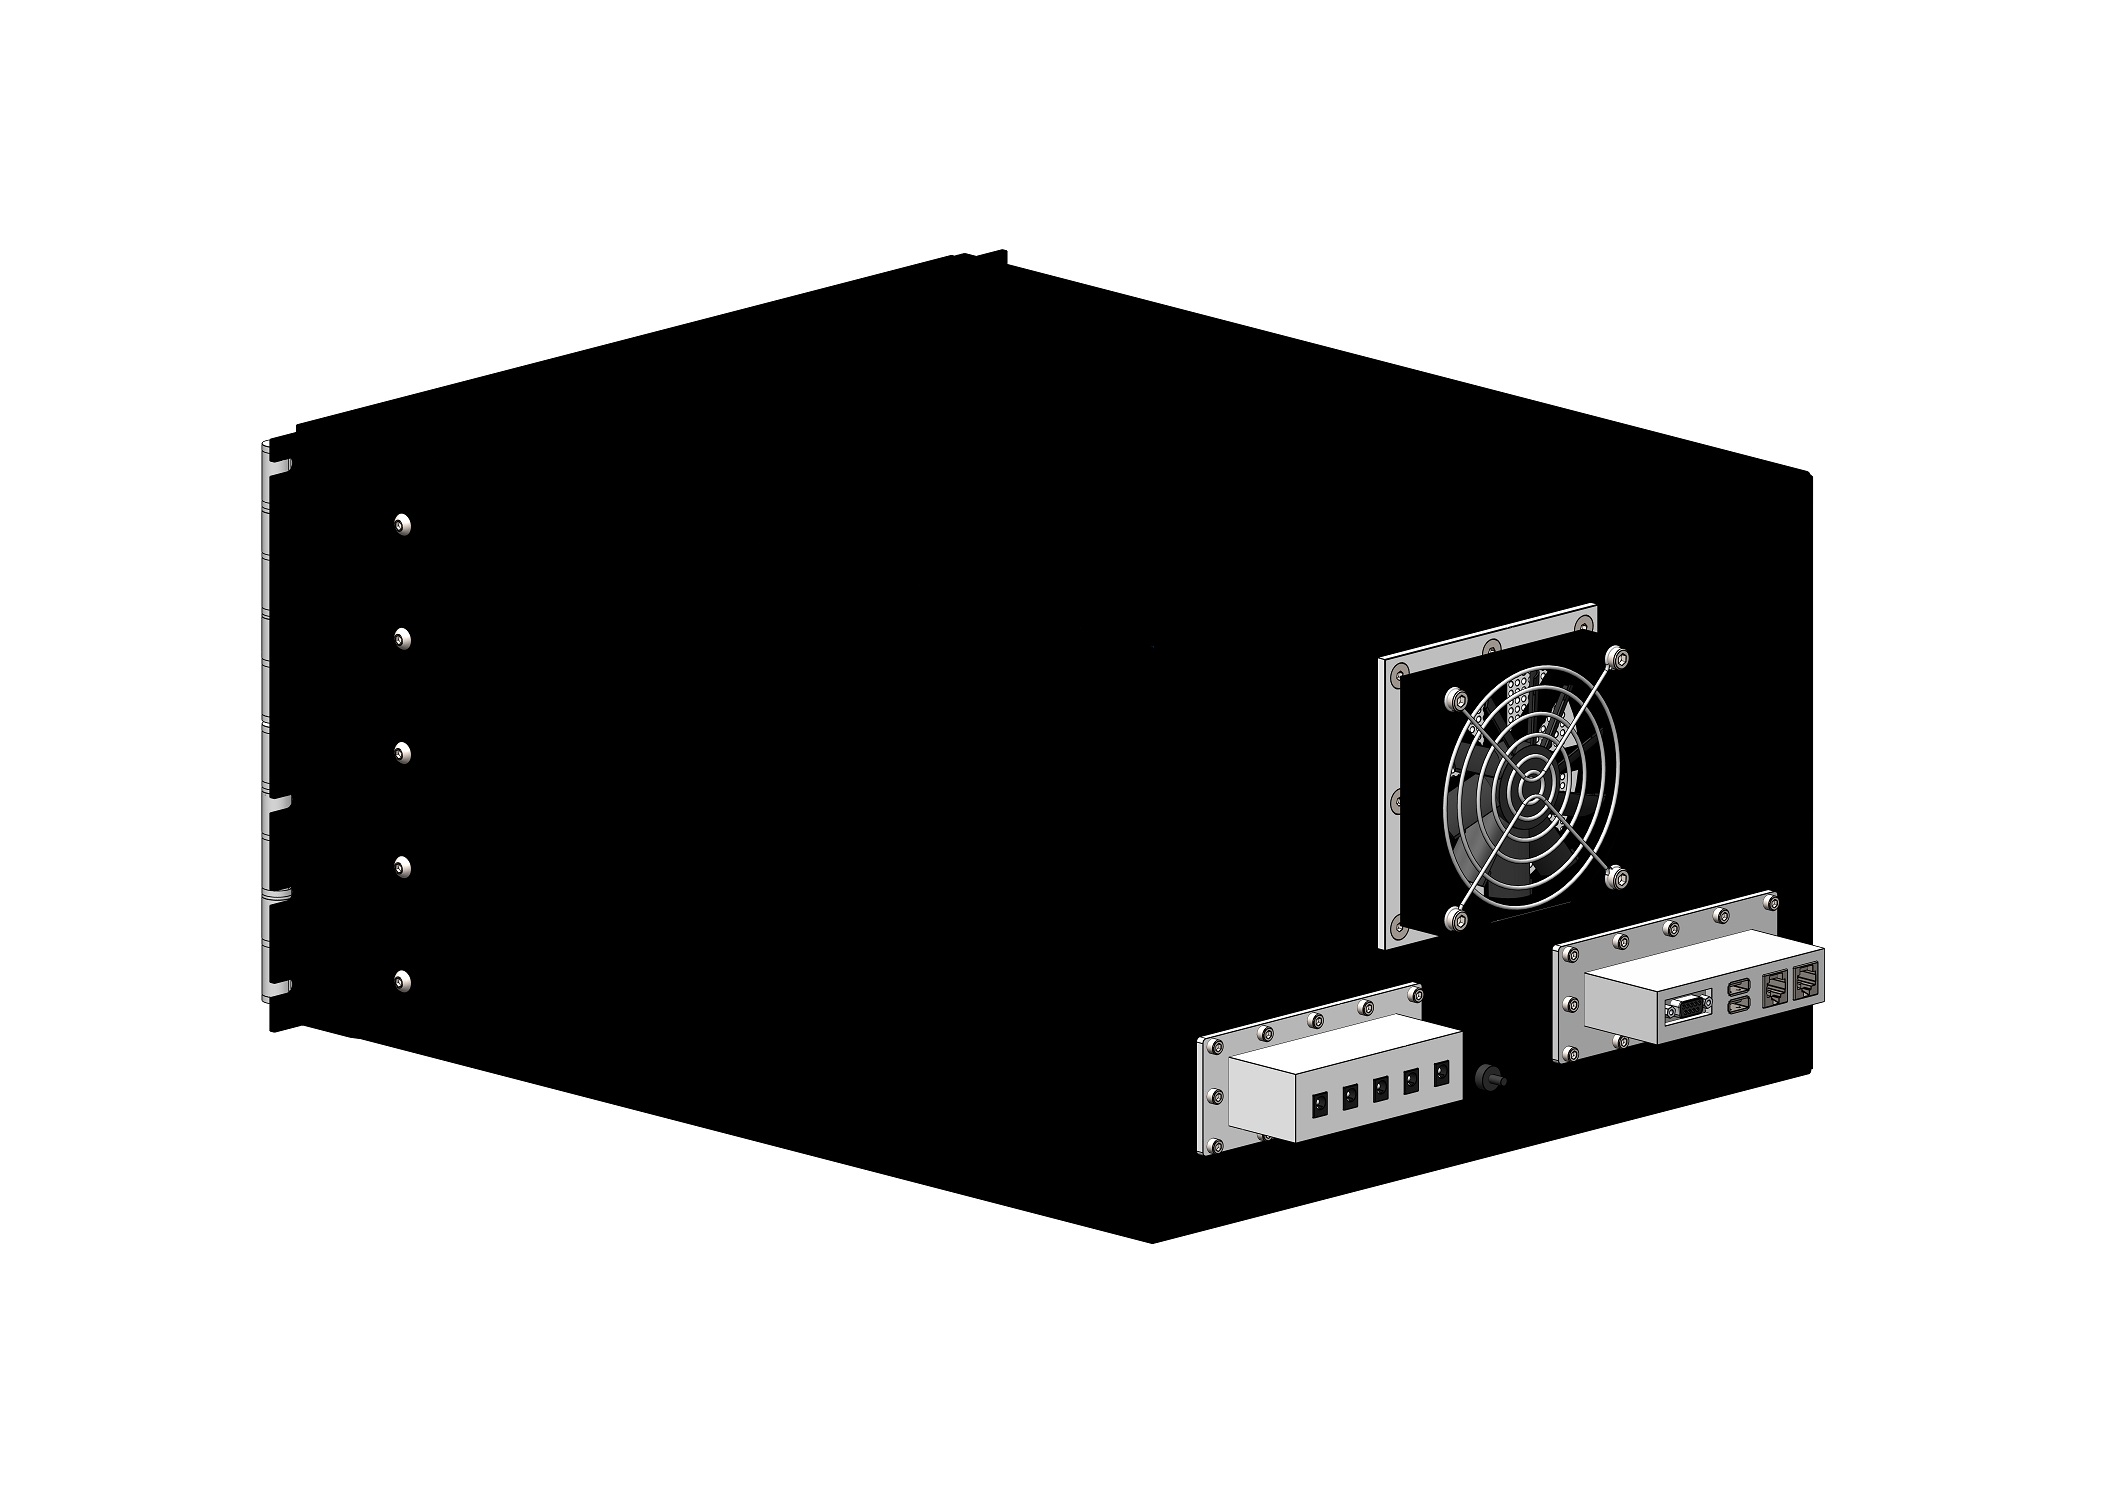 HDRF-1160-U RF Shield Test Box